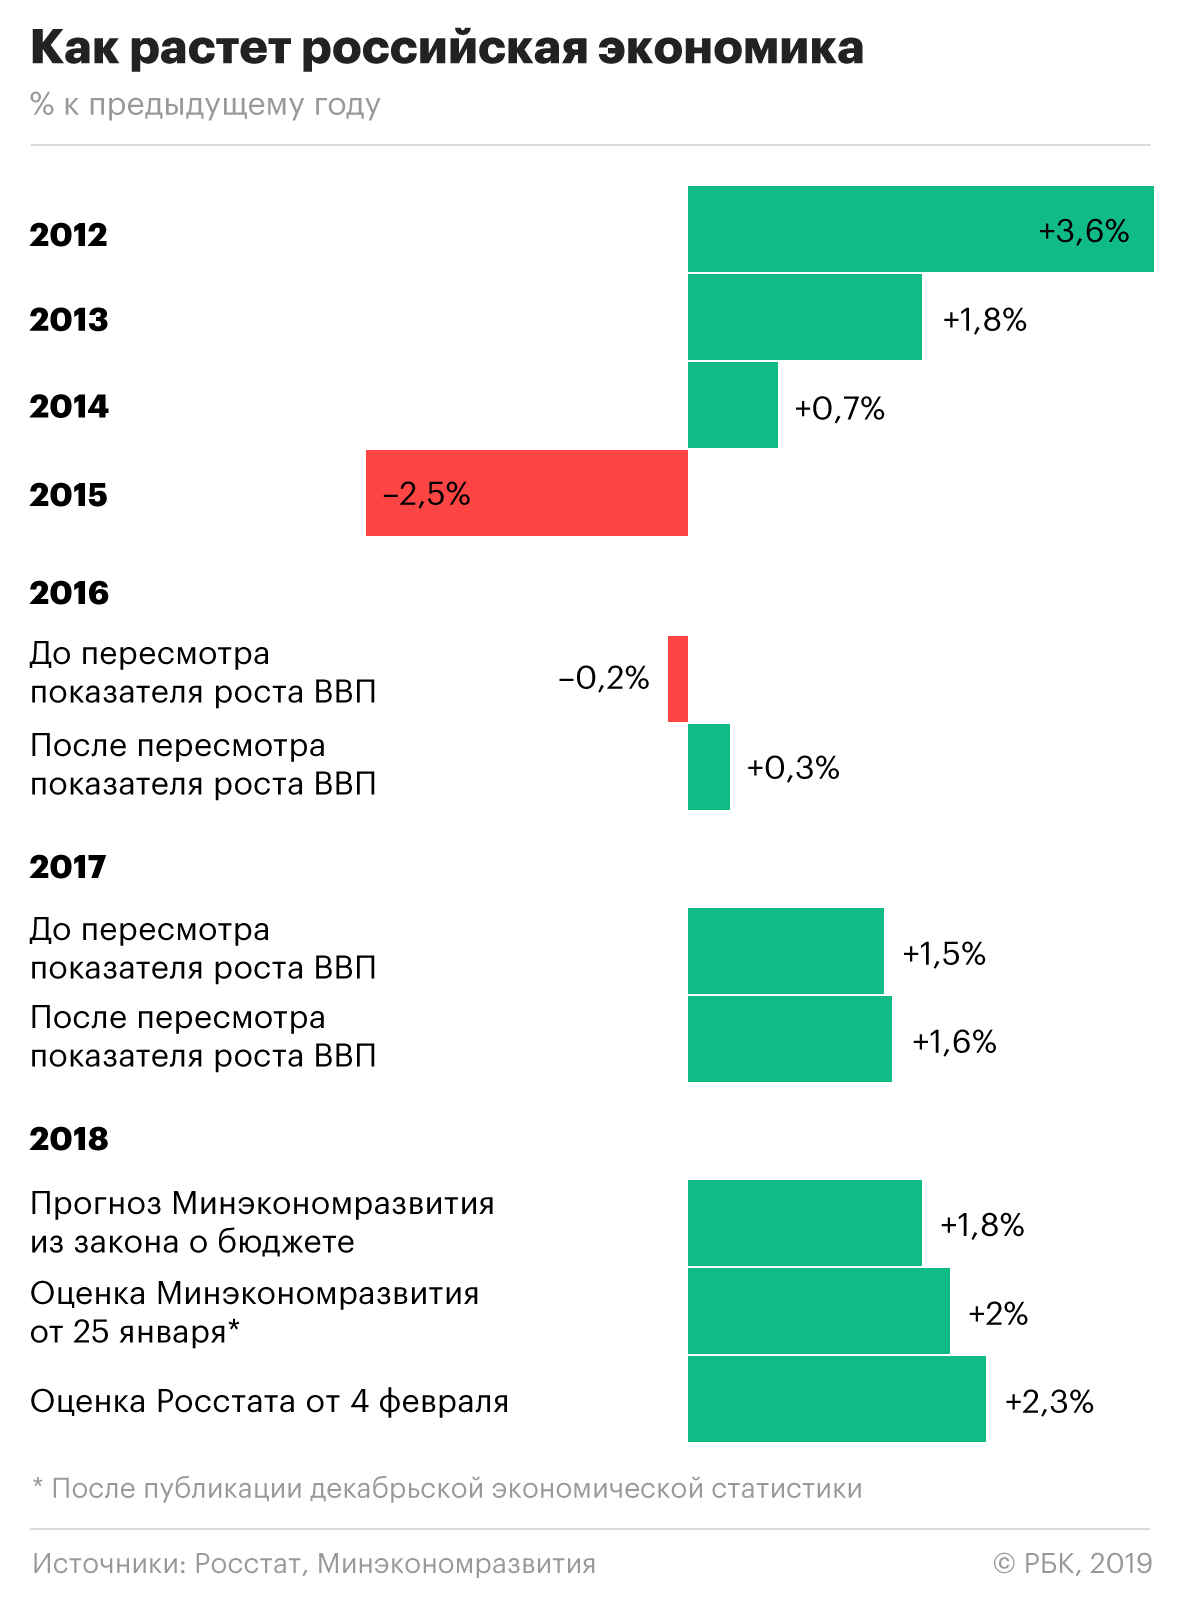 Чем объясняется неожиданное ускорение российской экономики